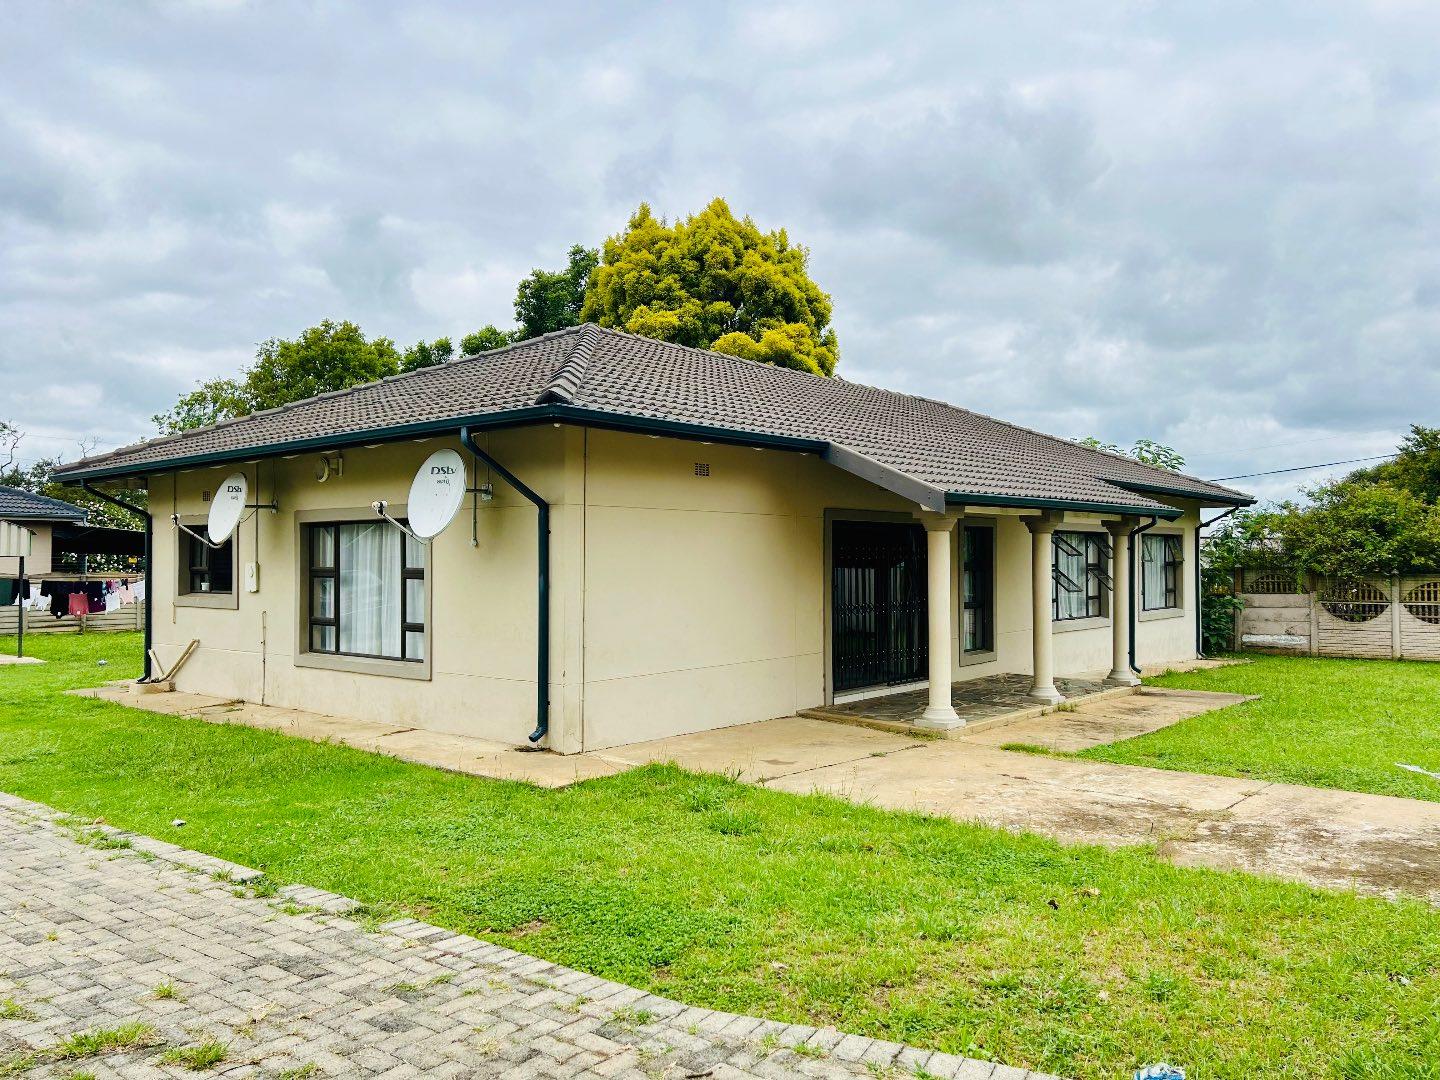 5 Bedroom Property for Sale in Vryheid KwaZulu-Natal